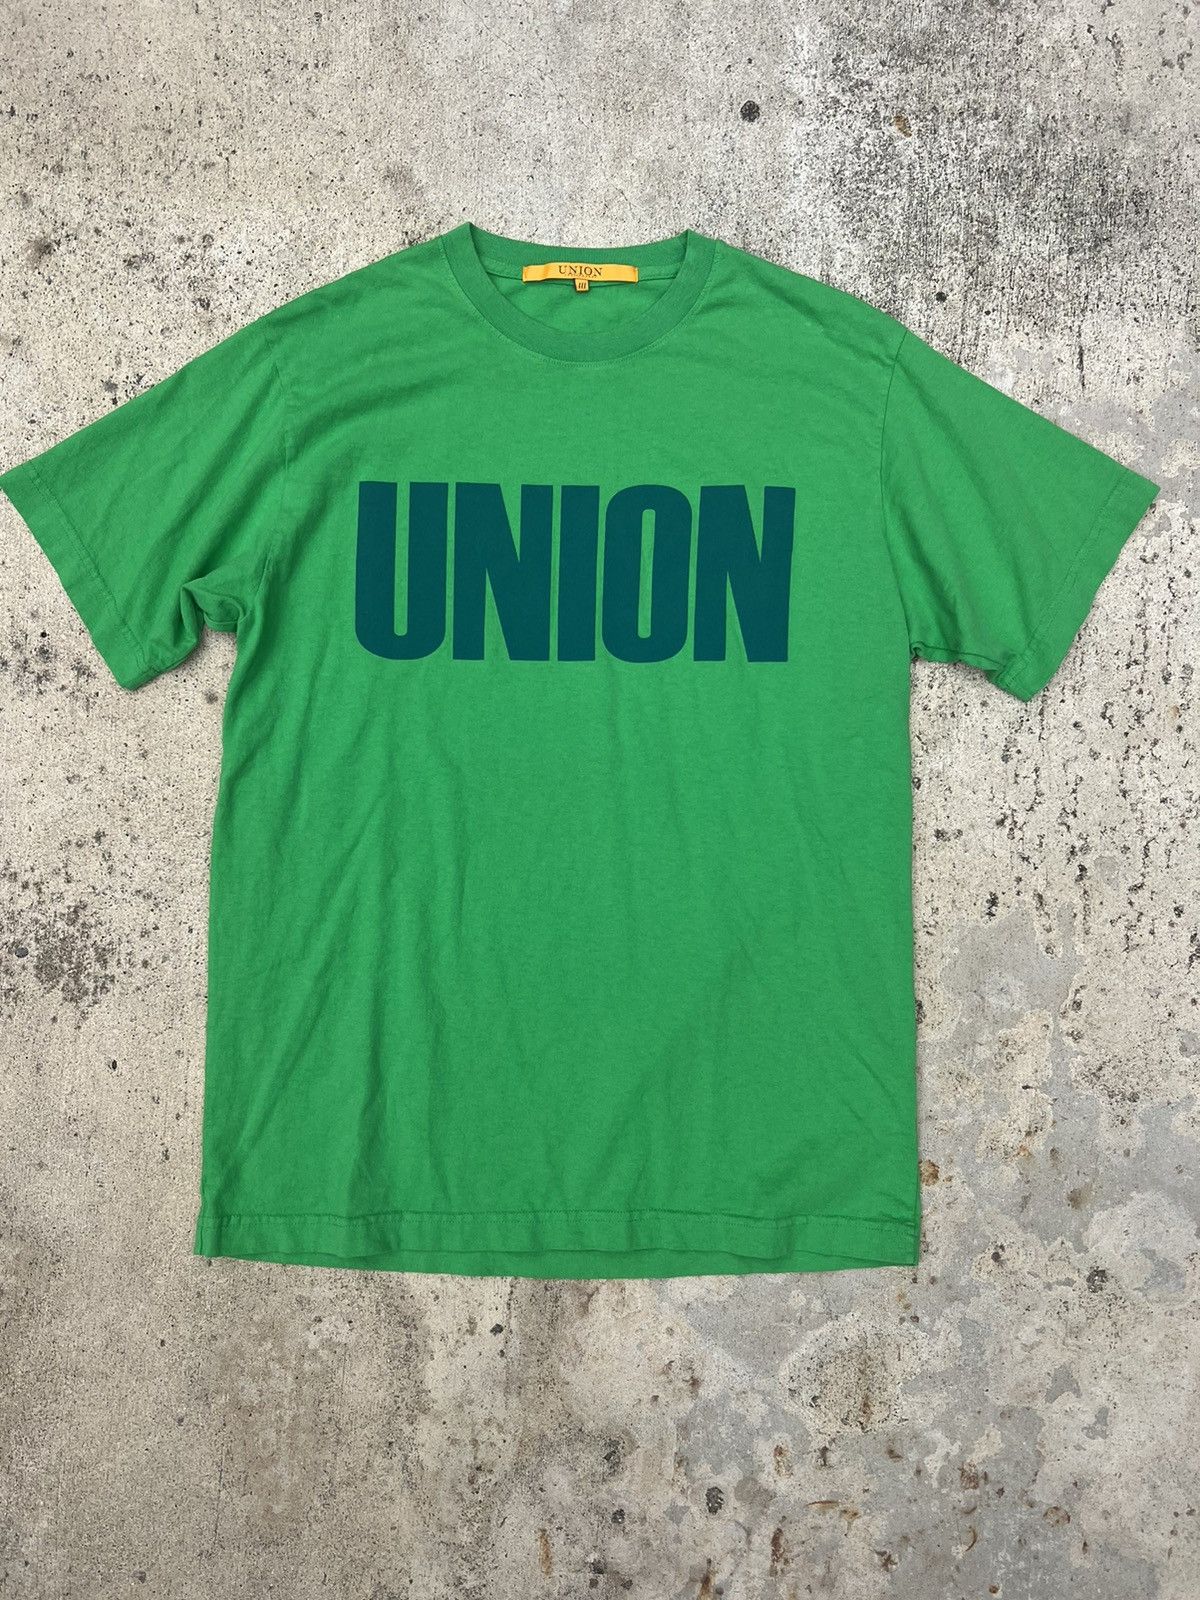 Union Union LA Logo Tee | Grailed